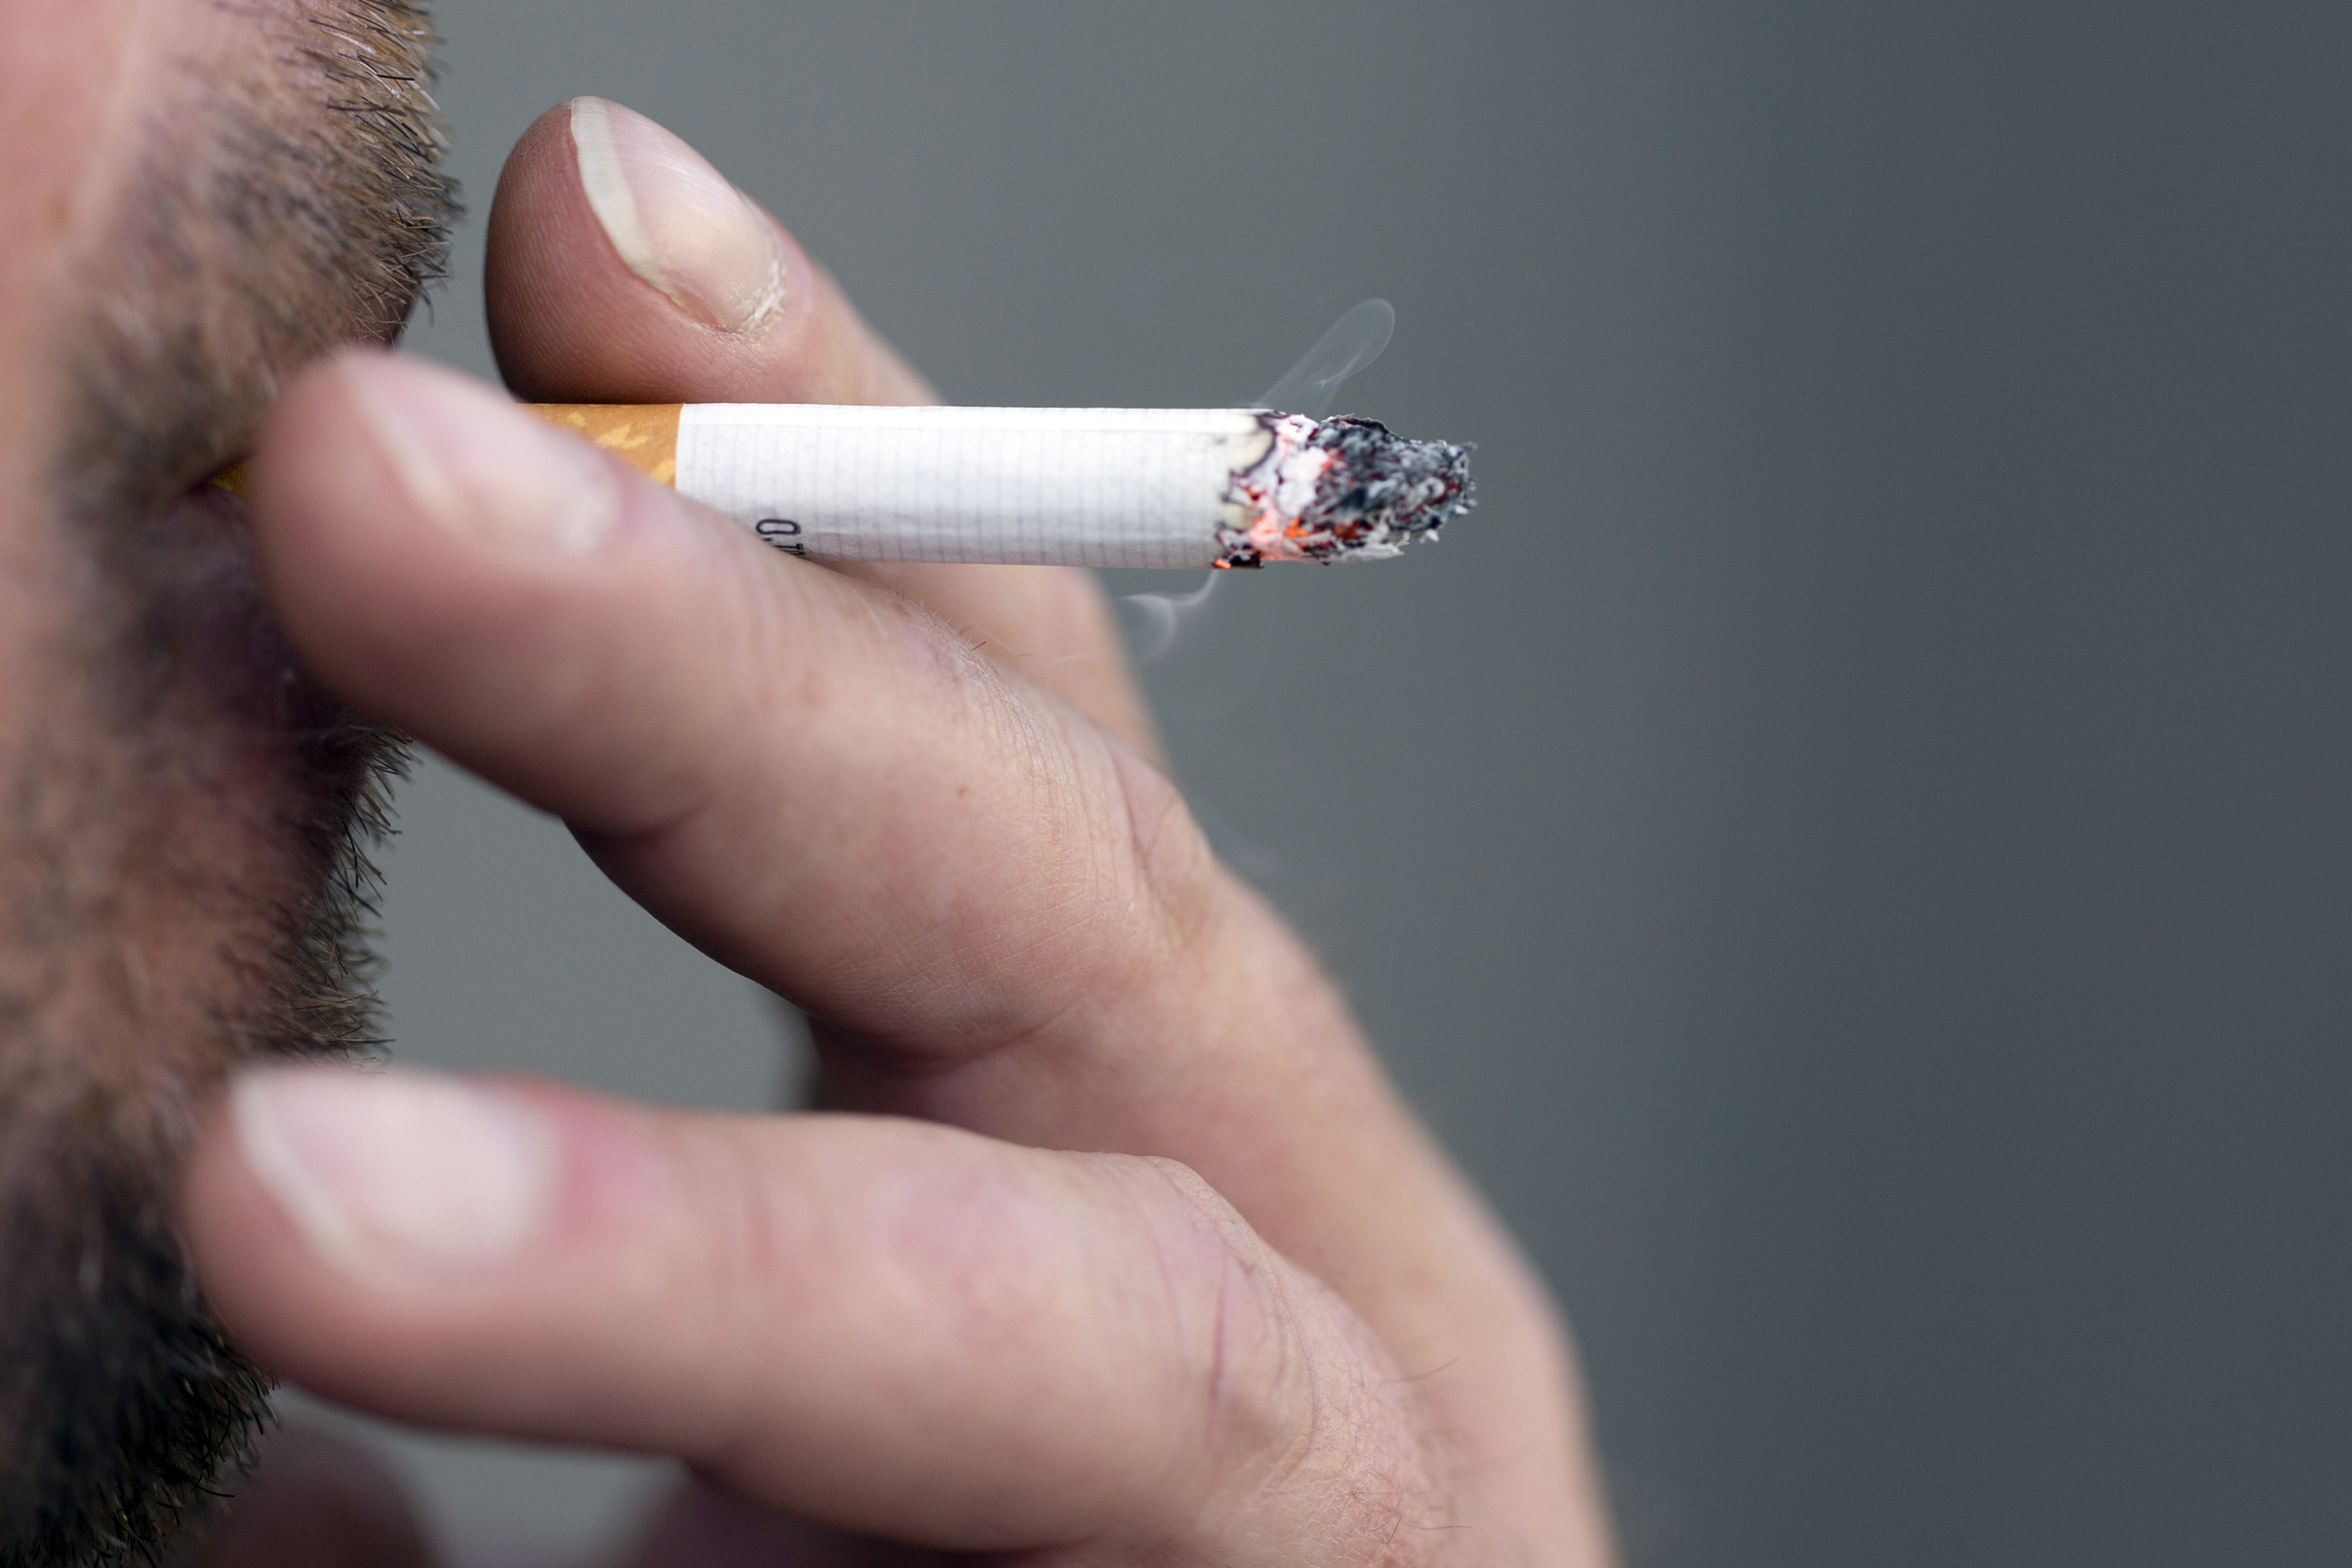 6 métodos científicamente probados para dejar de fumar